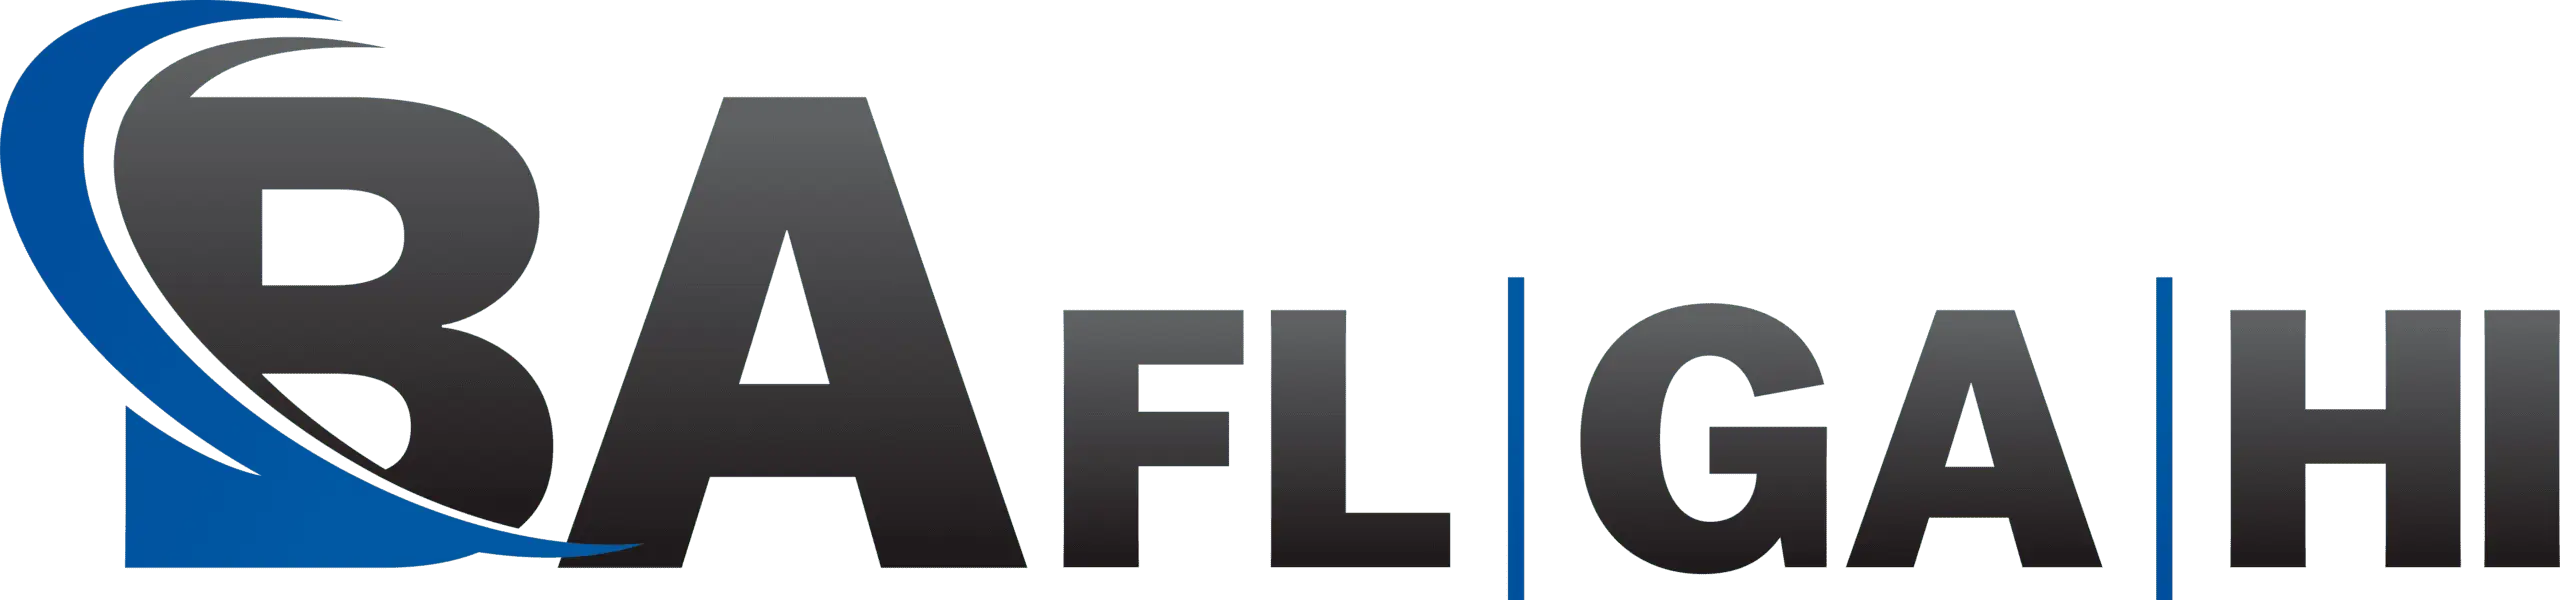 ba-fg logo